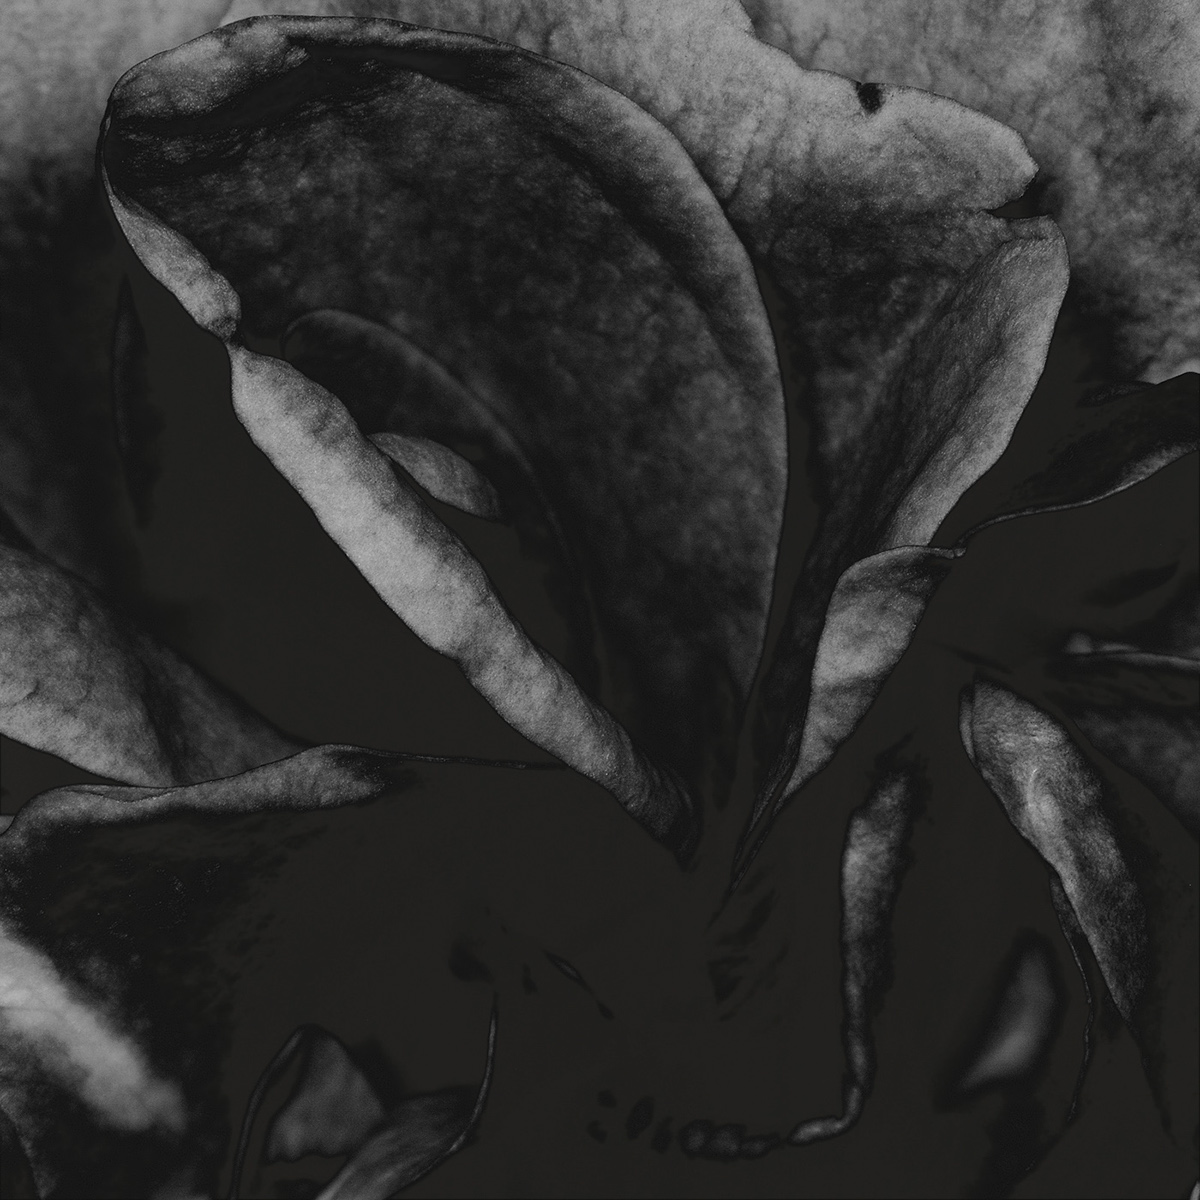 rose perfume Fragrance folds flower bloom Black&white square